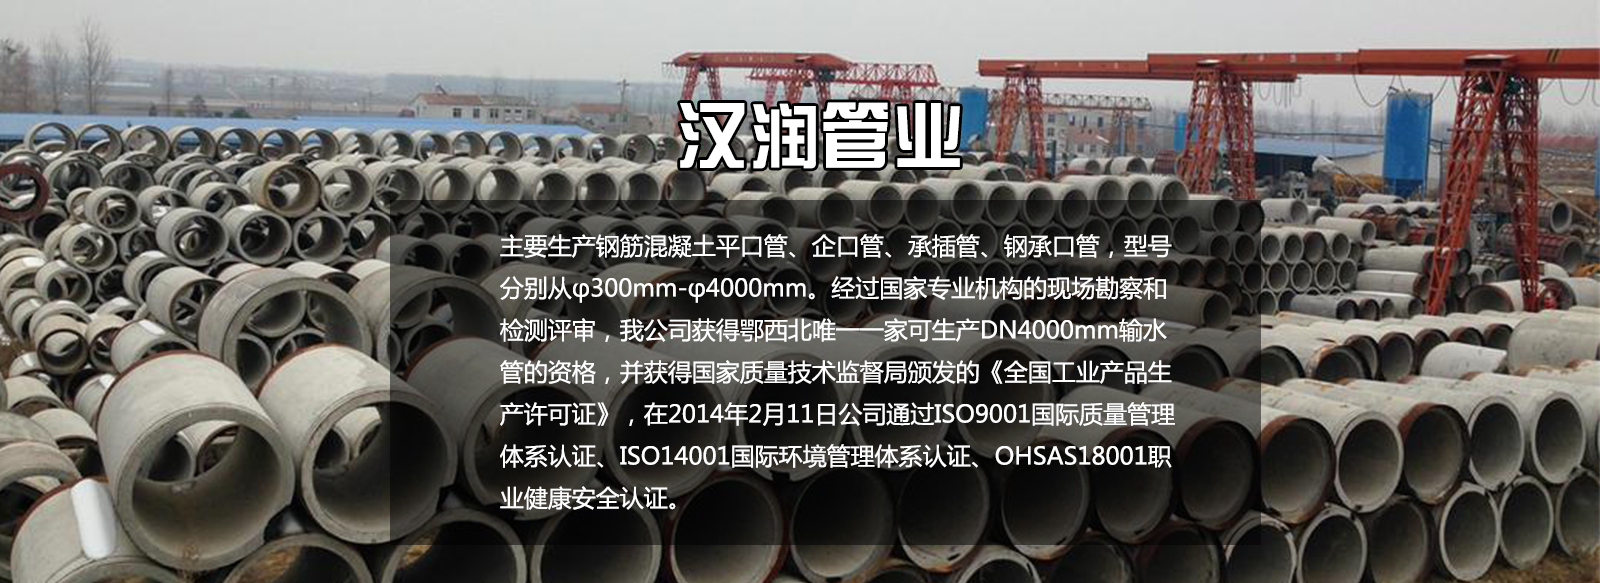 郑州水泥管企业要抓住目前结构性改革的有利时机